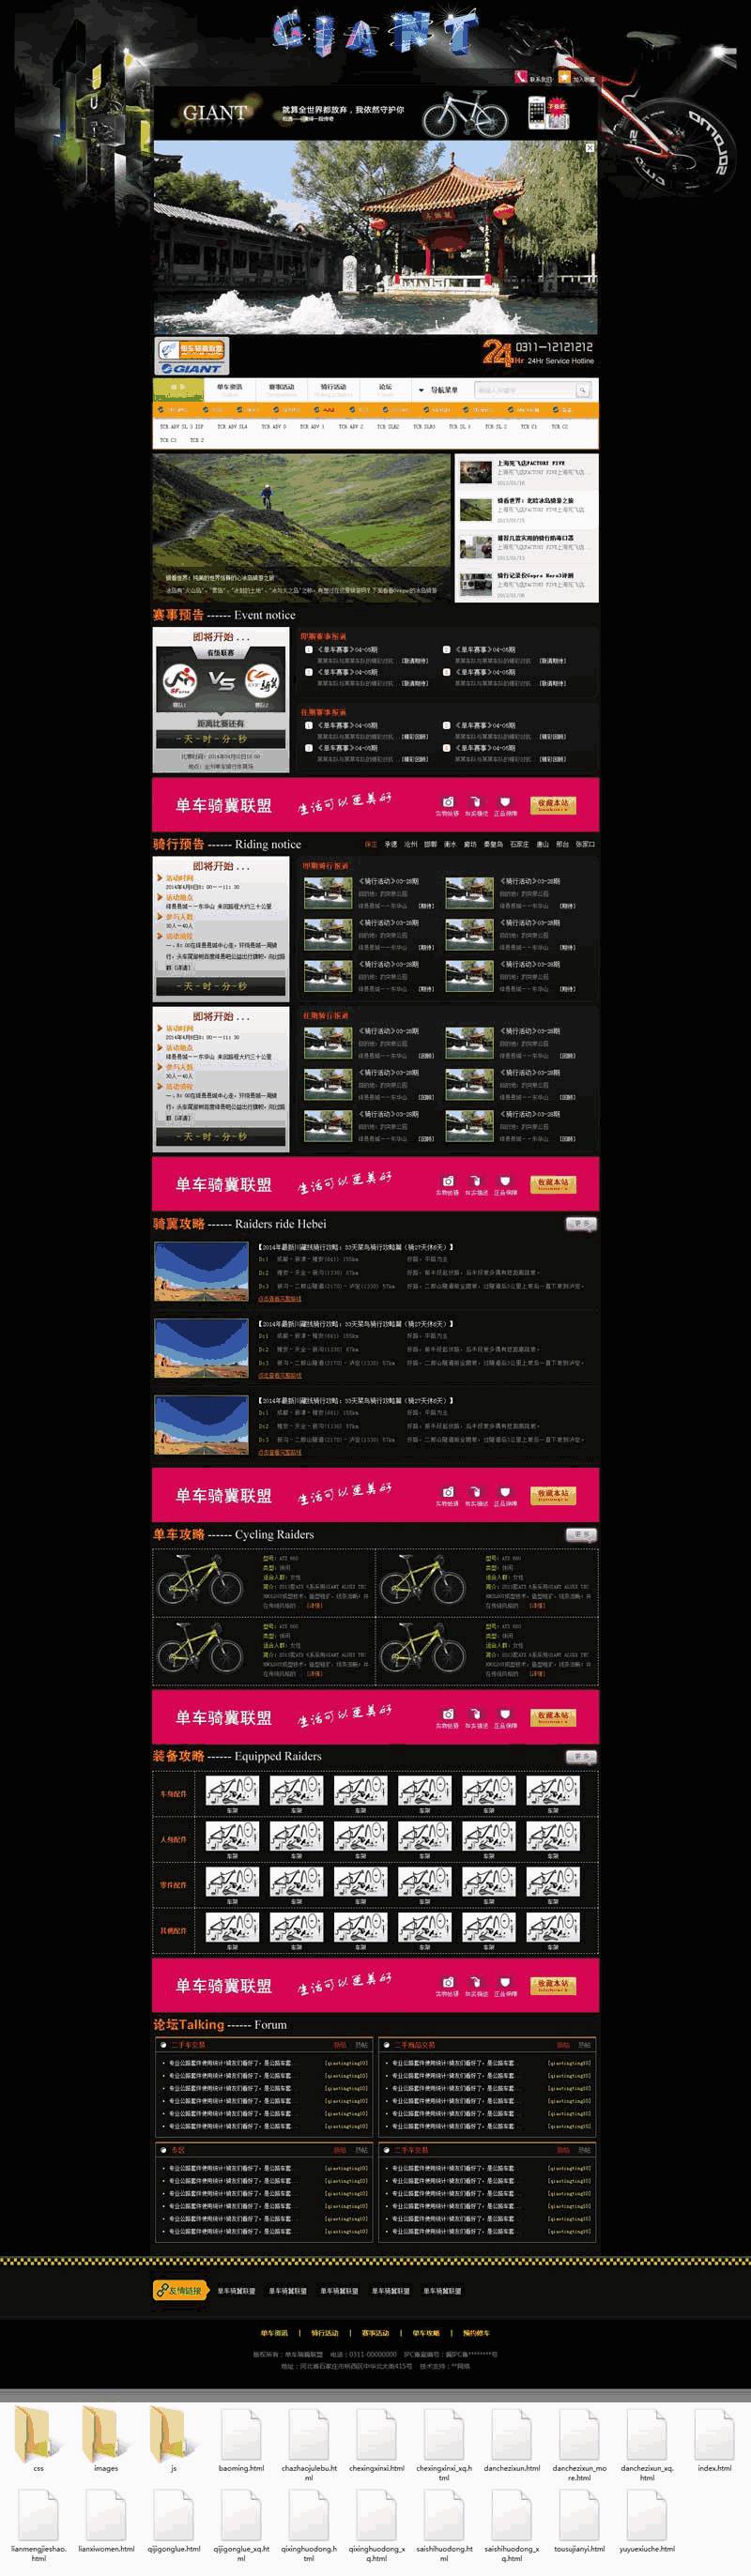 单车俱乐部联盟平台网站WordPress模板主题演示图